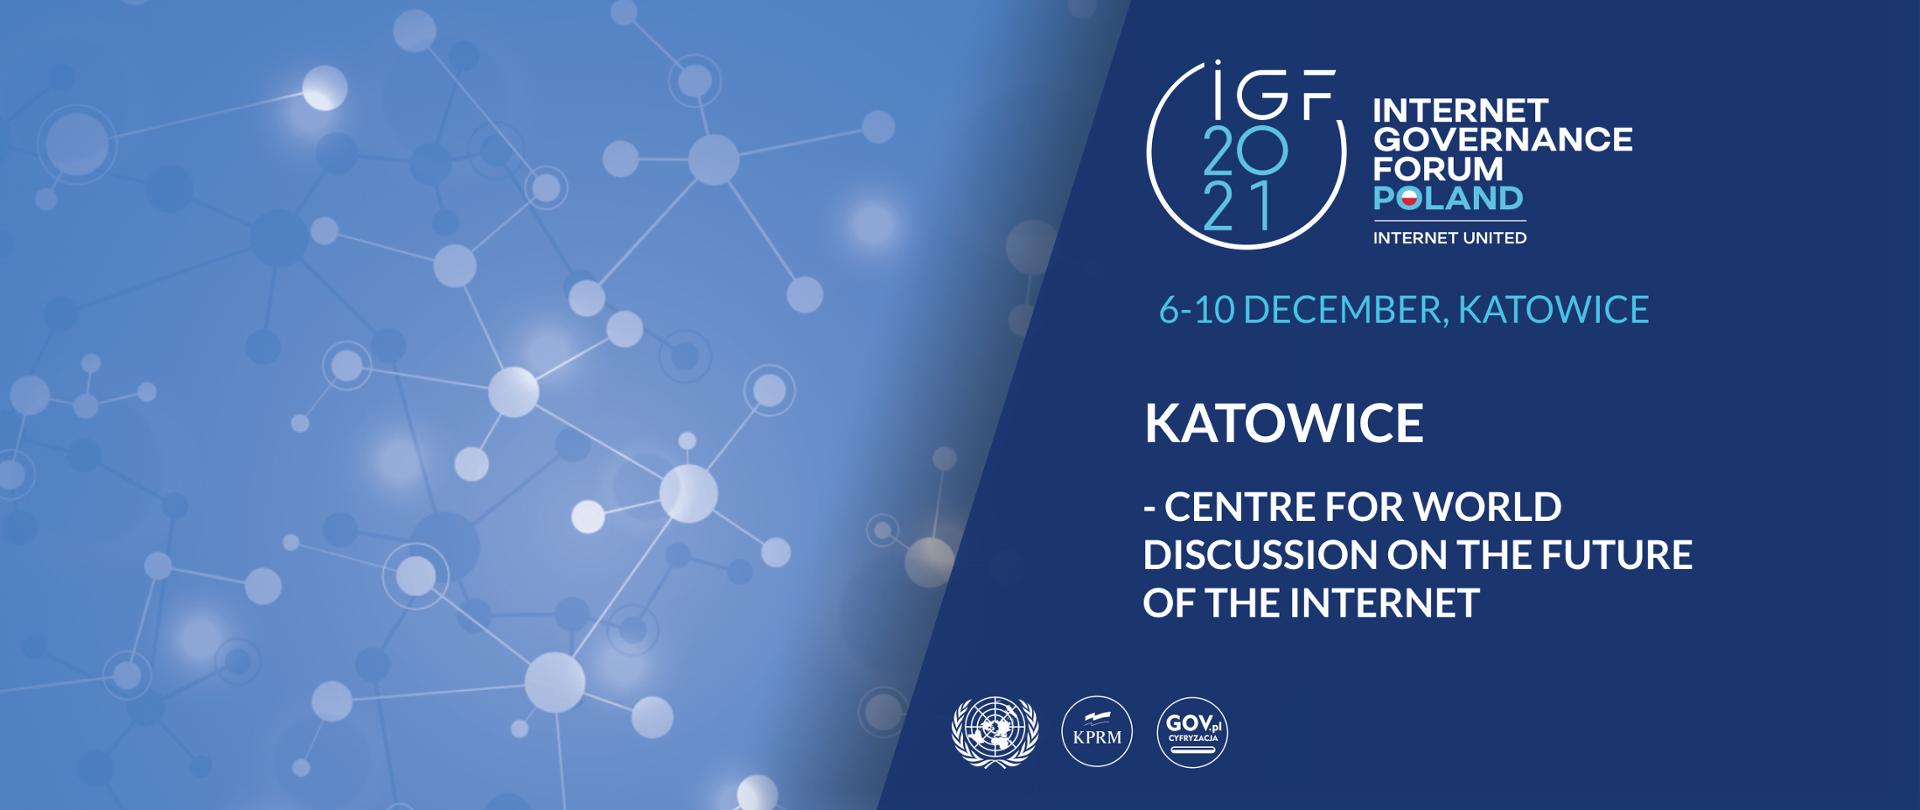 O Fórum de Governança da Internet da ONU - # IGF2021